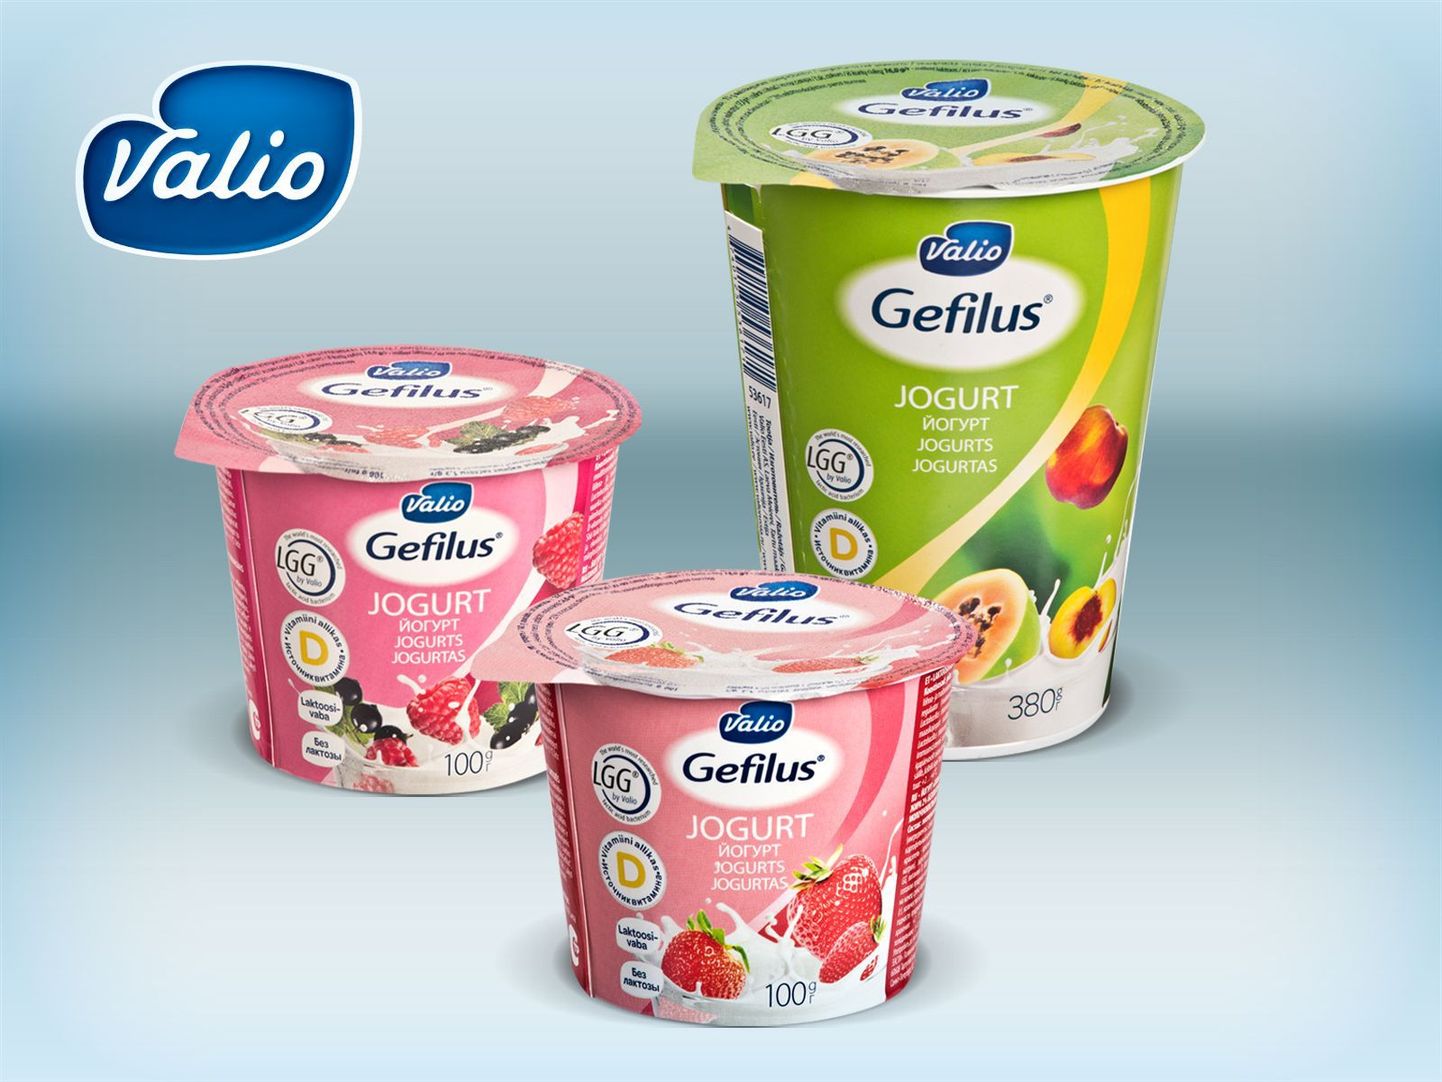 Gefiluse jogurtitel on nüüd ka märge, et need sisaldavad D-vitamiini.